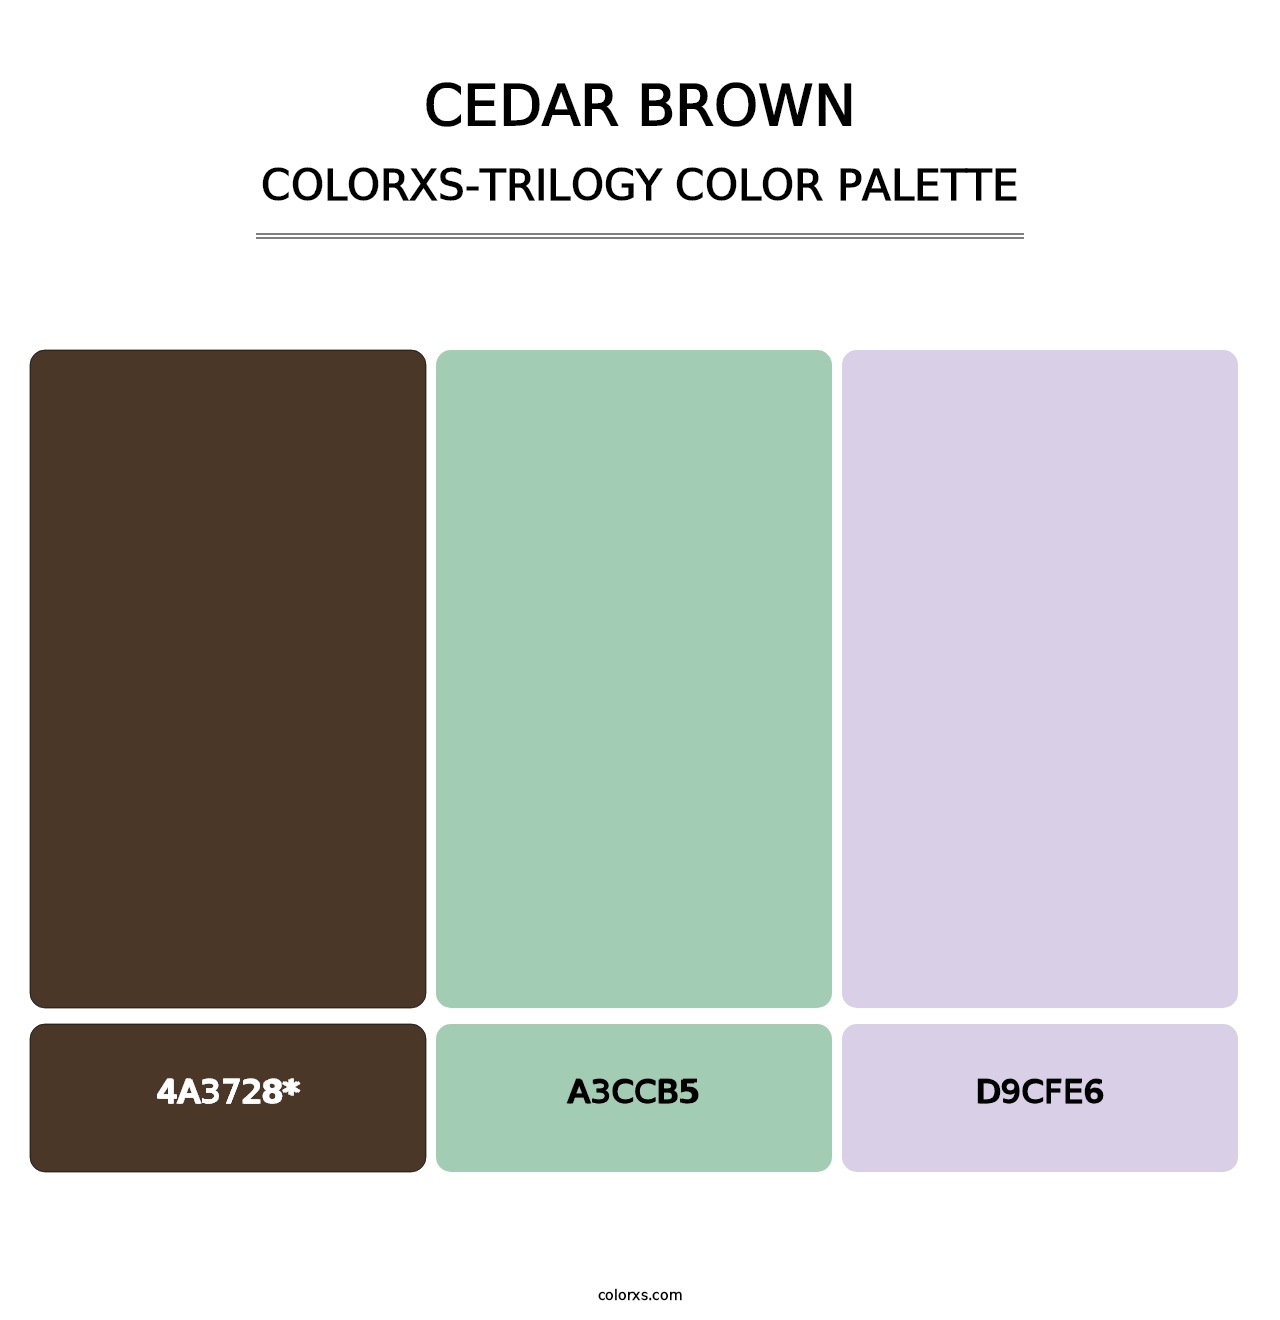 Cedar Brown - Colorxs Trilogy Palette